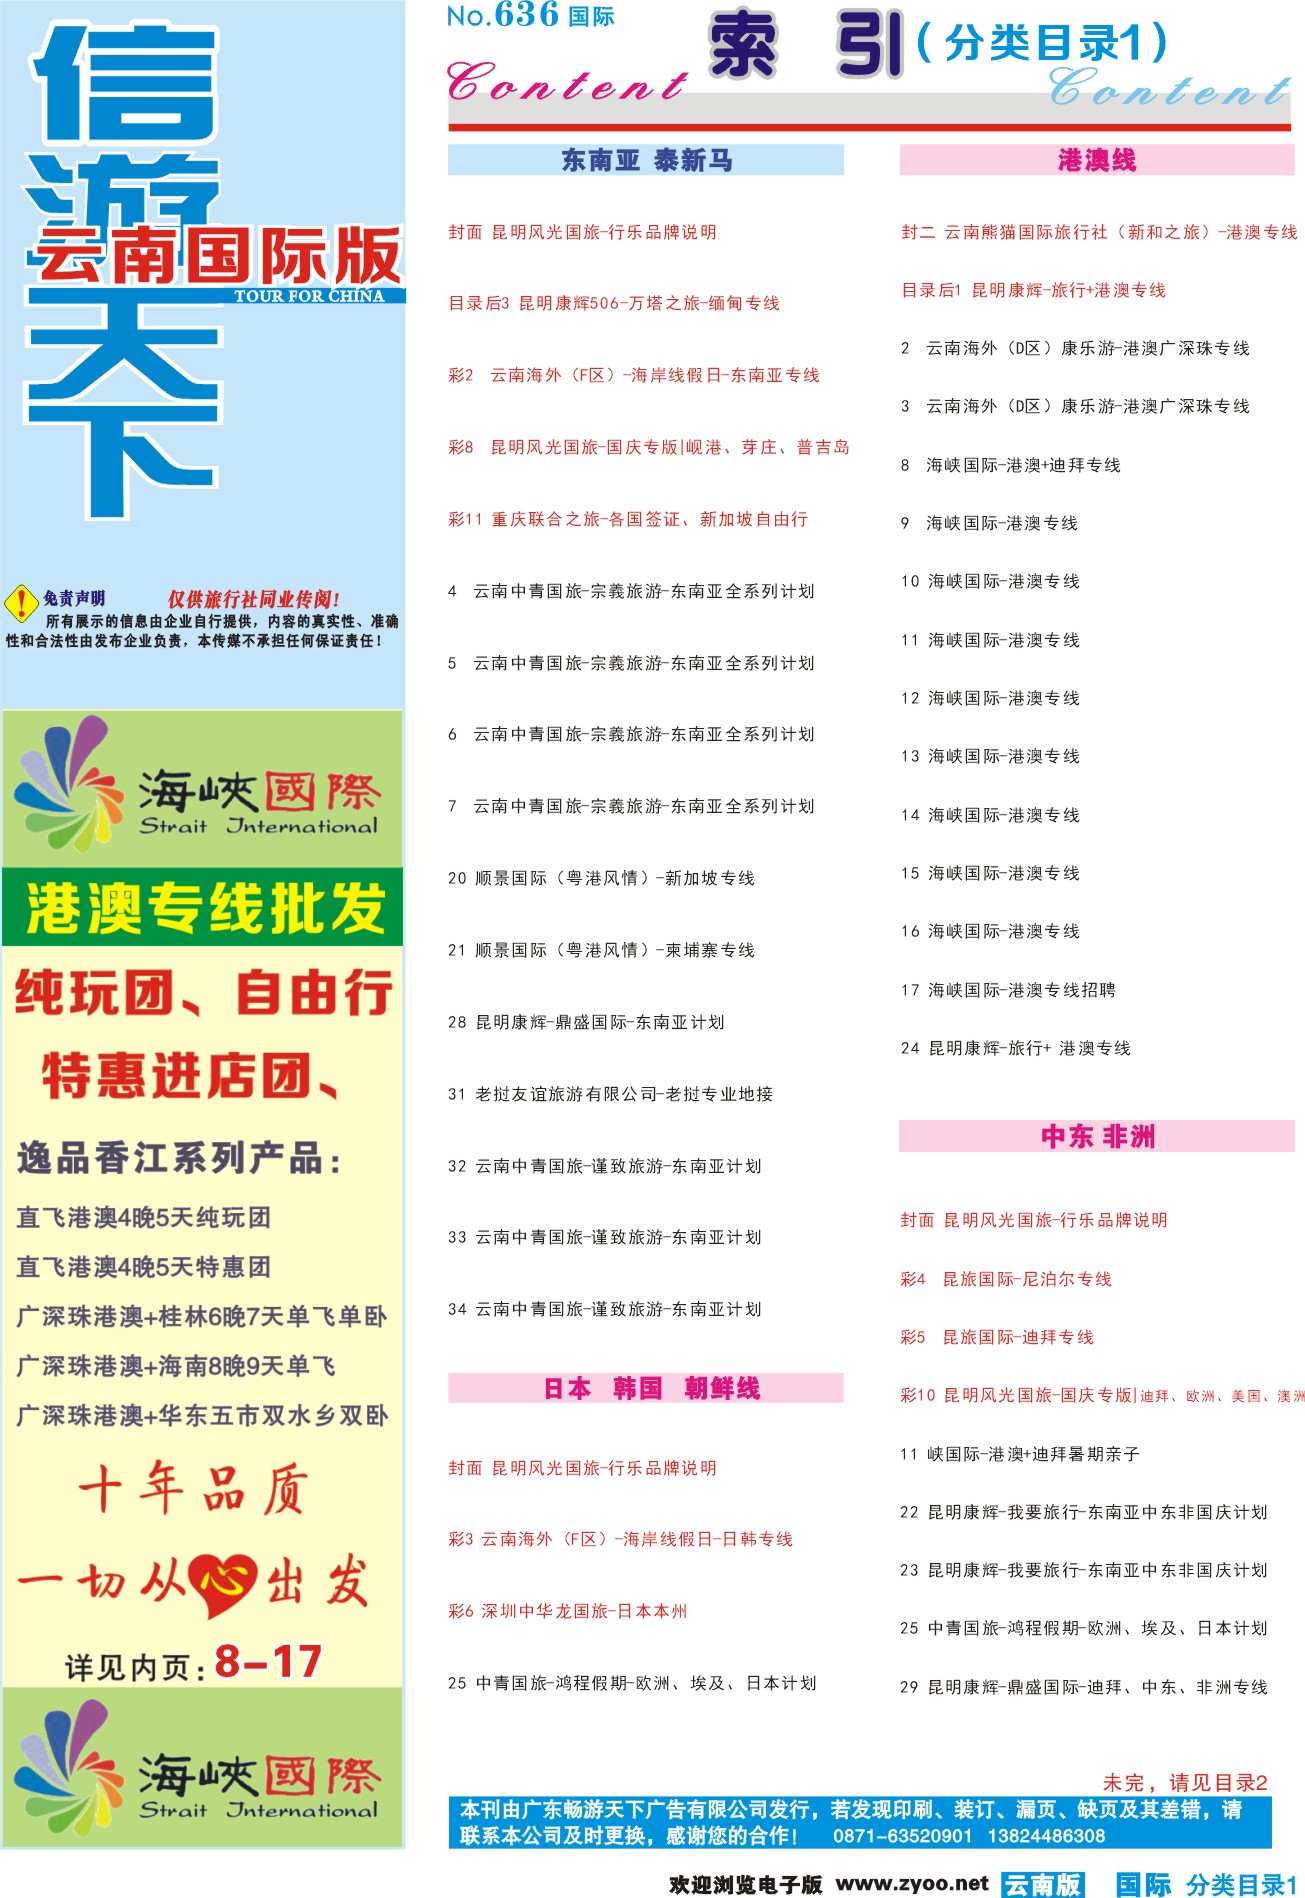 636期 云南国际版蓝版分类目录1